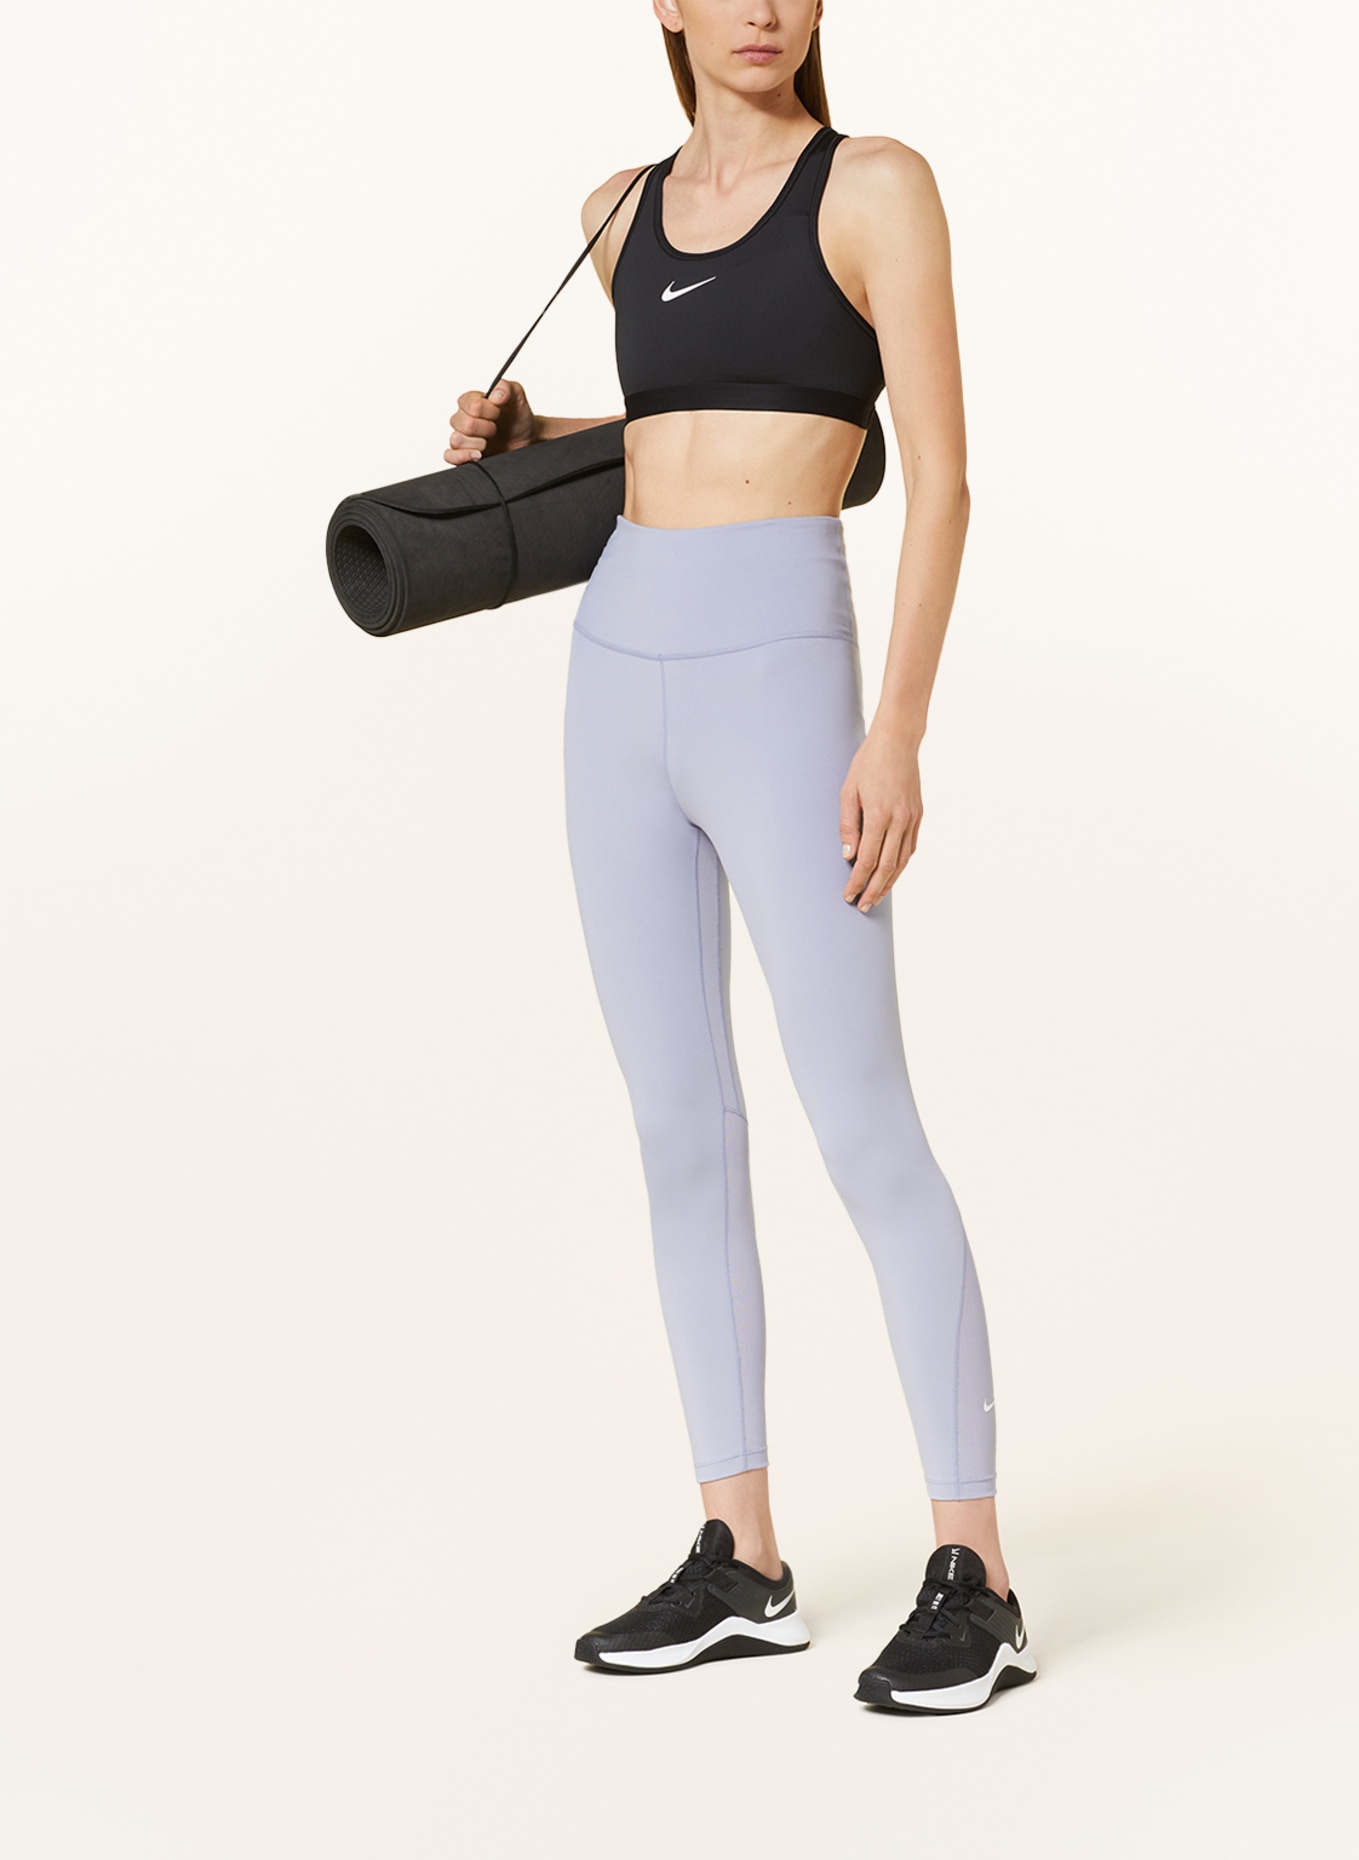 Nike Yoga Swoosh luxe bra in black